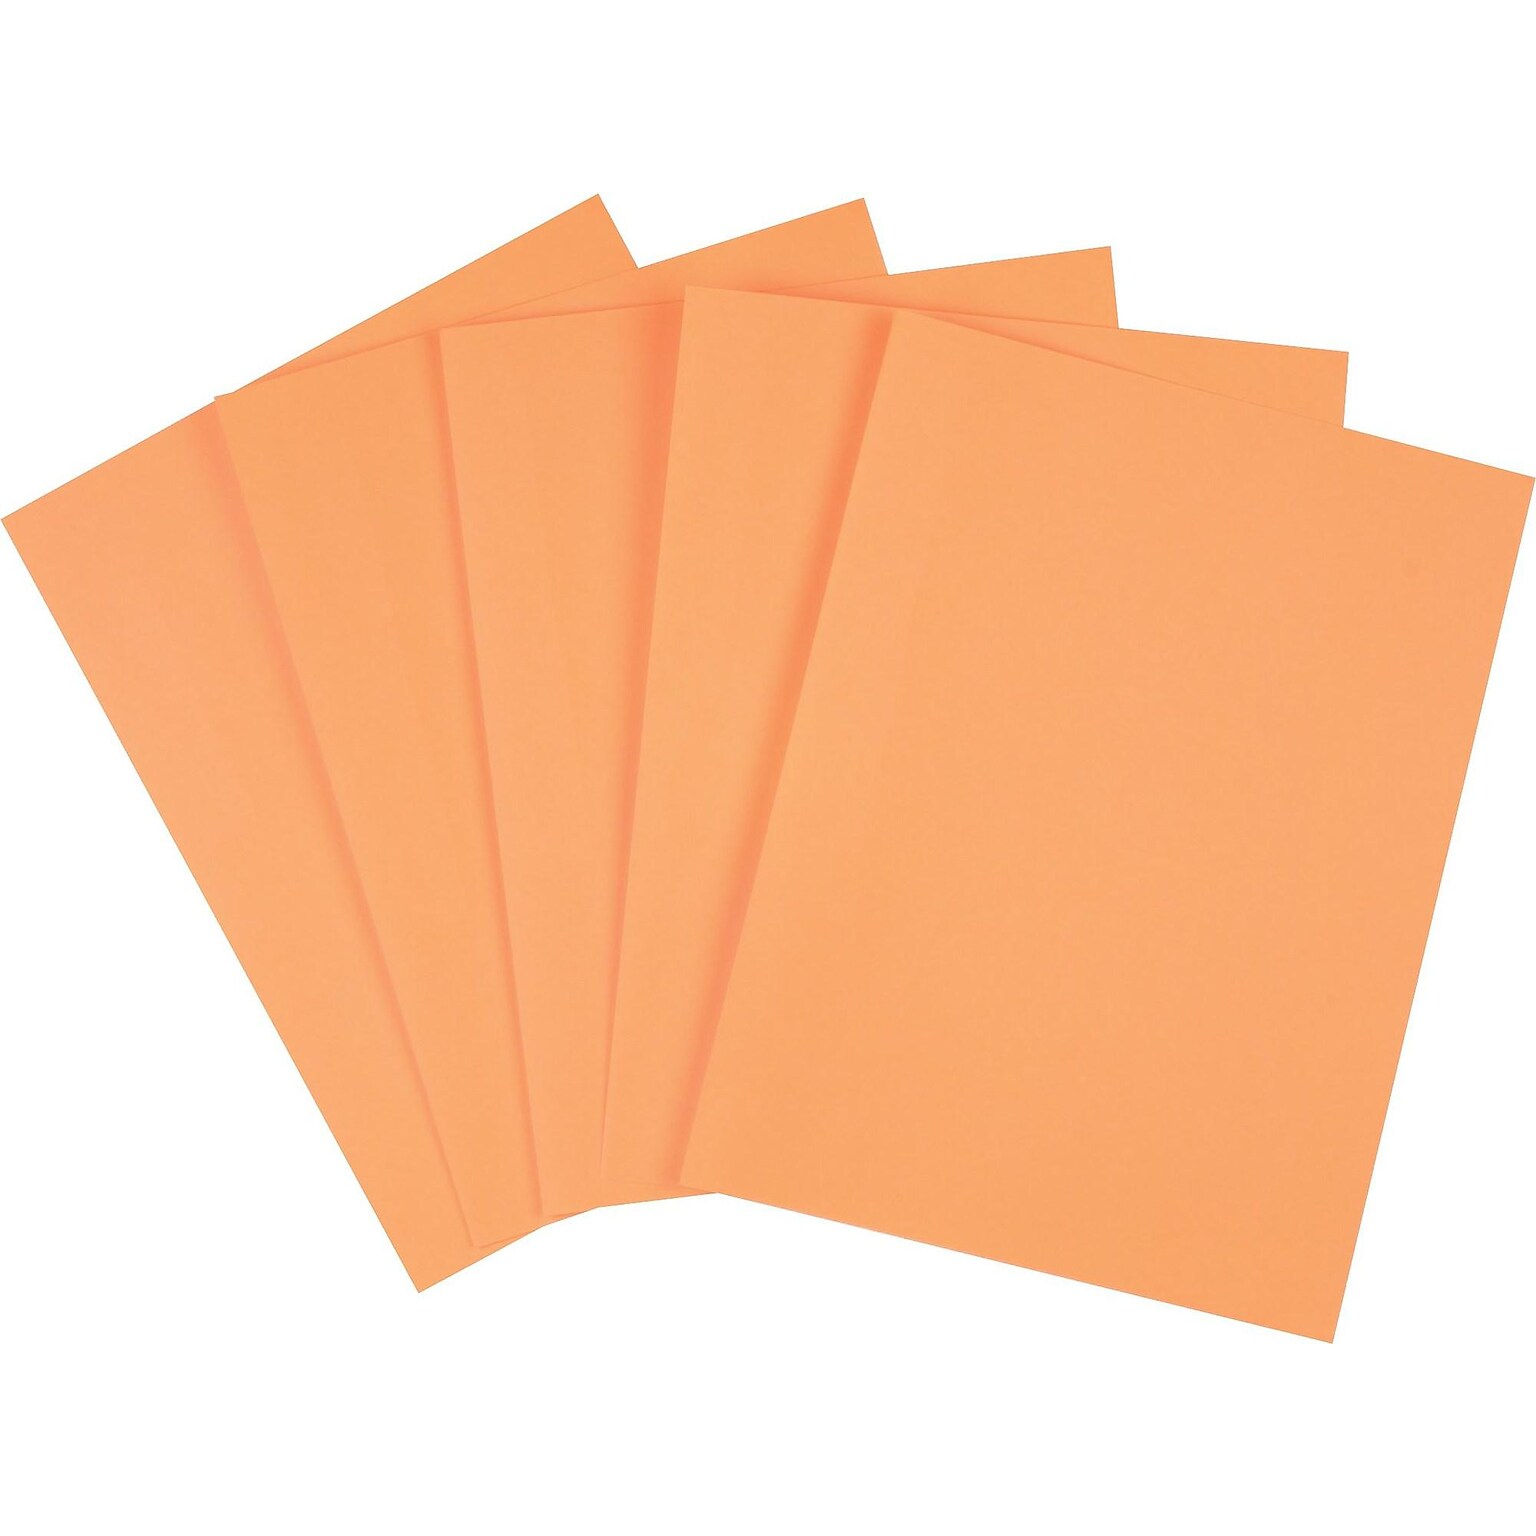 Staples Brights Multipurpose Colored Paper, 20 lbs., 8.5 x 11, Orange, 500/Ream (25208)